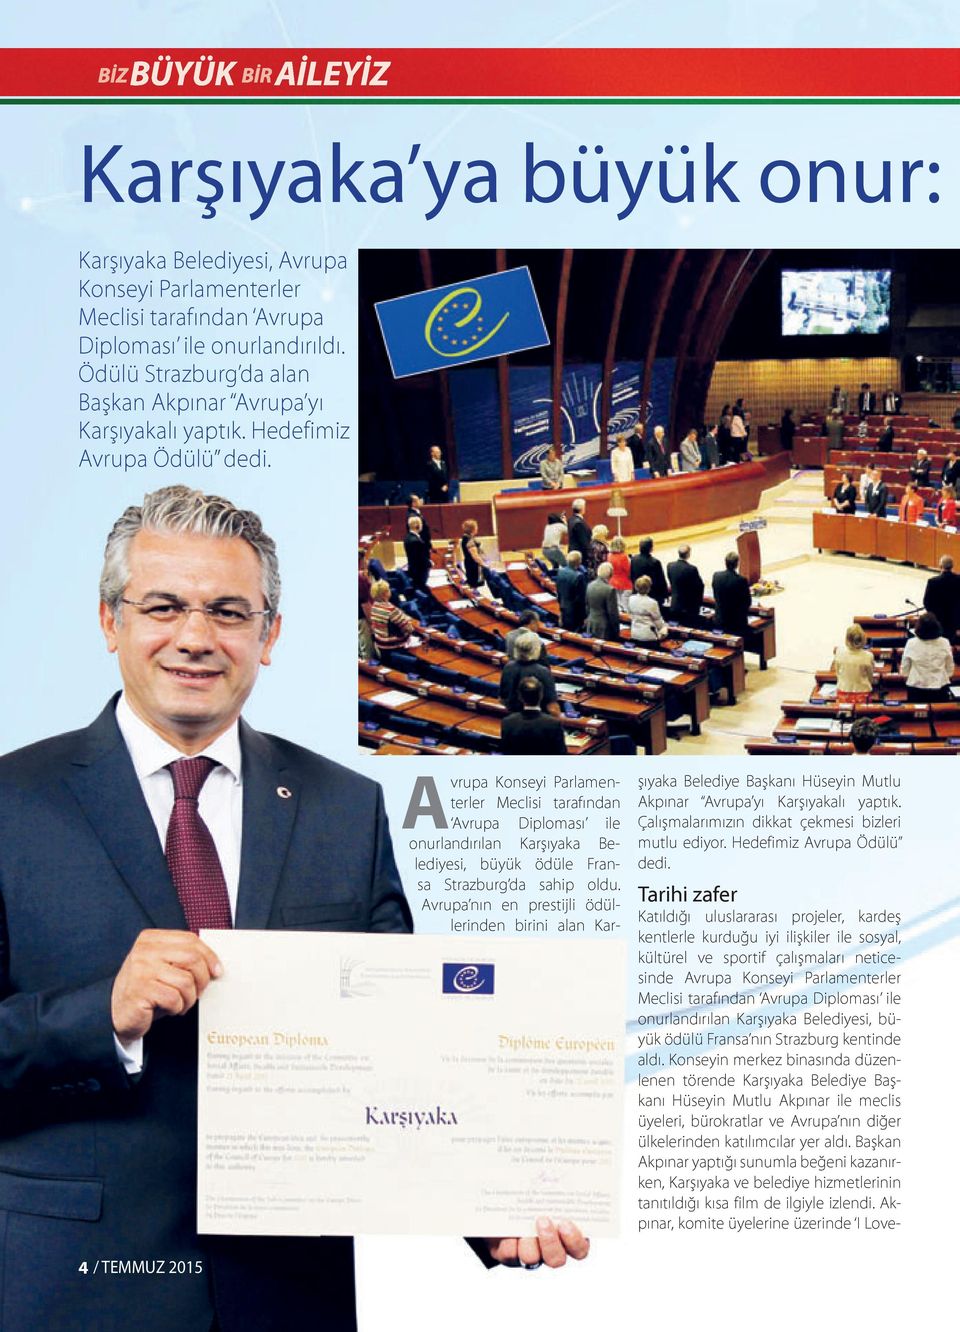 Avrupa Konseyi Parlamenterler Meclisi tarafından Avrupa Diploması ile onurlandırılan Karşıyaka Belediyesi, büyük ödüle Fransa Strazburg da sahip oldu.